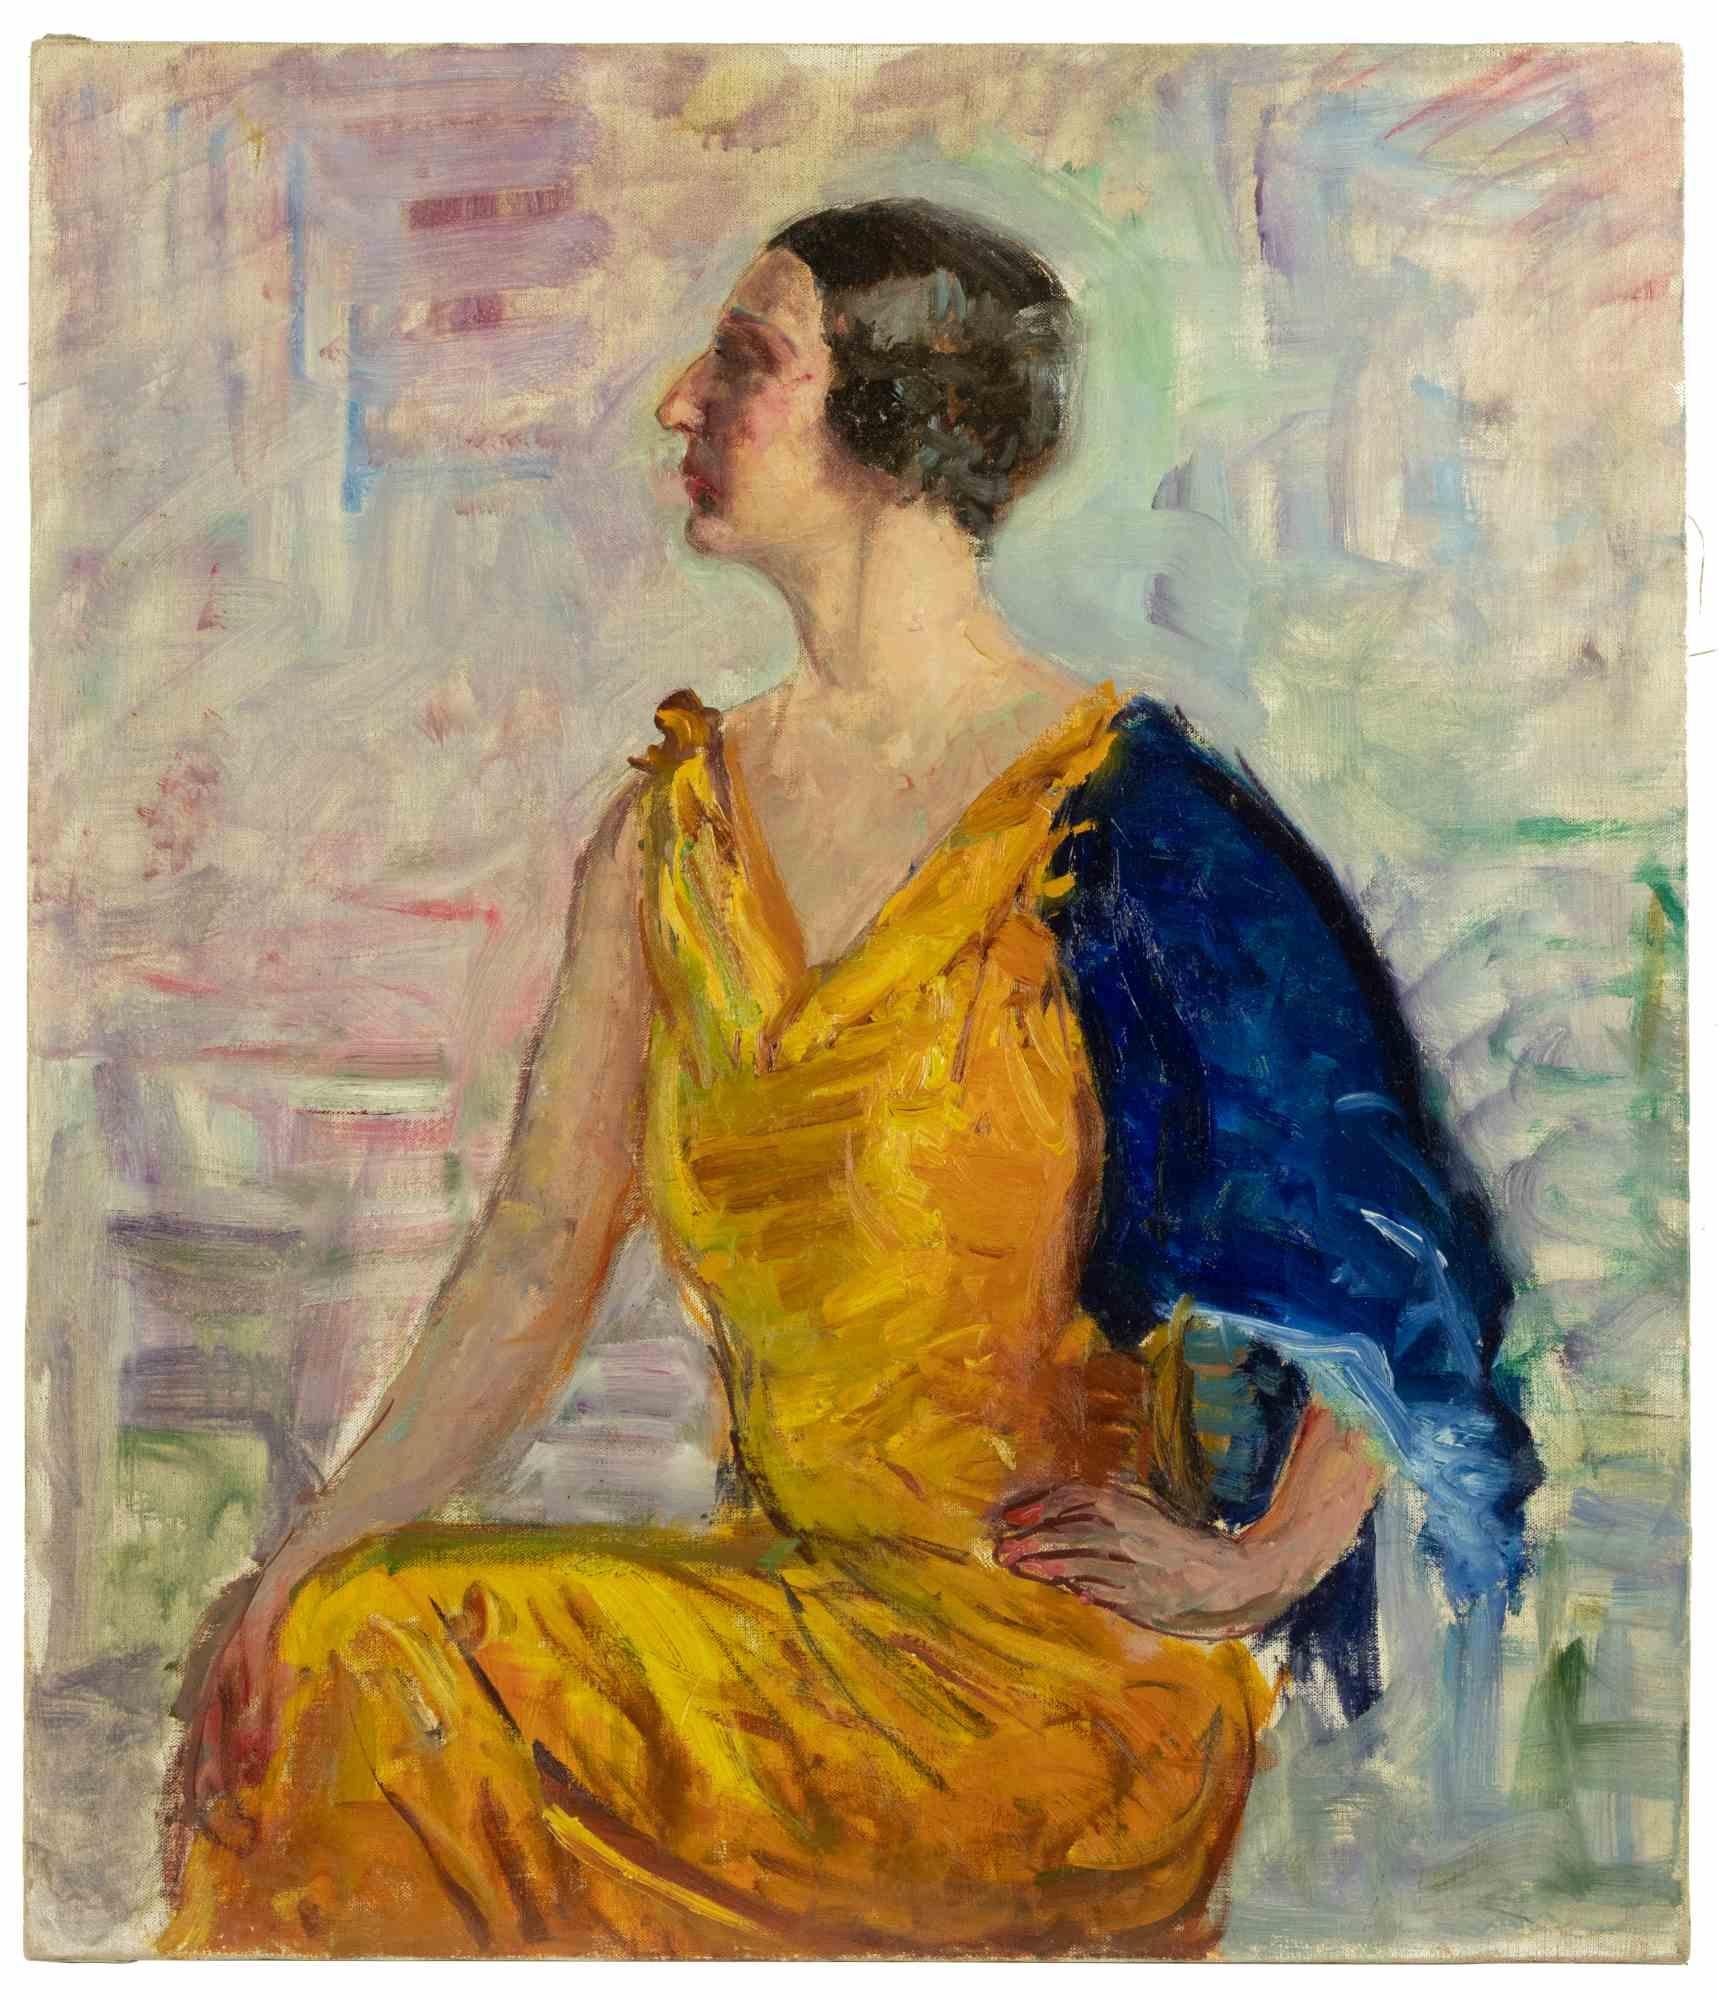 Das Porträt einer Frau ist ein Original von Antonio Feltrinelli in Öl auf Leinwand aus den 1930er Jahren.

Sehr guter Zustand. Nicht unterzeichnet.

Antonio Feltrinelli (Mailand, 1887 - Gargnano, 1942)
Er wurde am 1. Juni 1887 in Mailand als Sohn